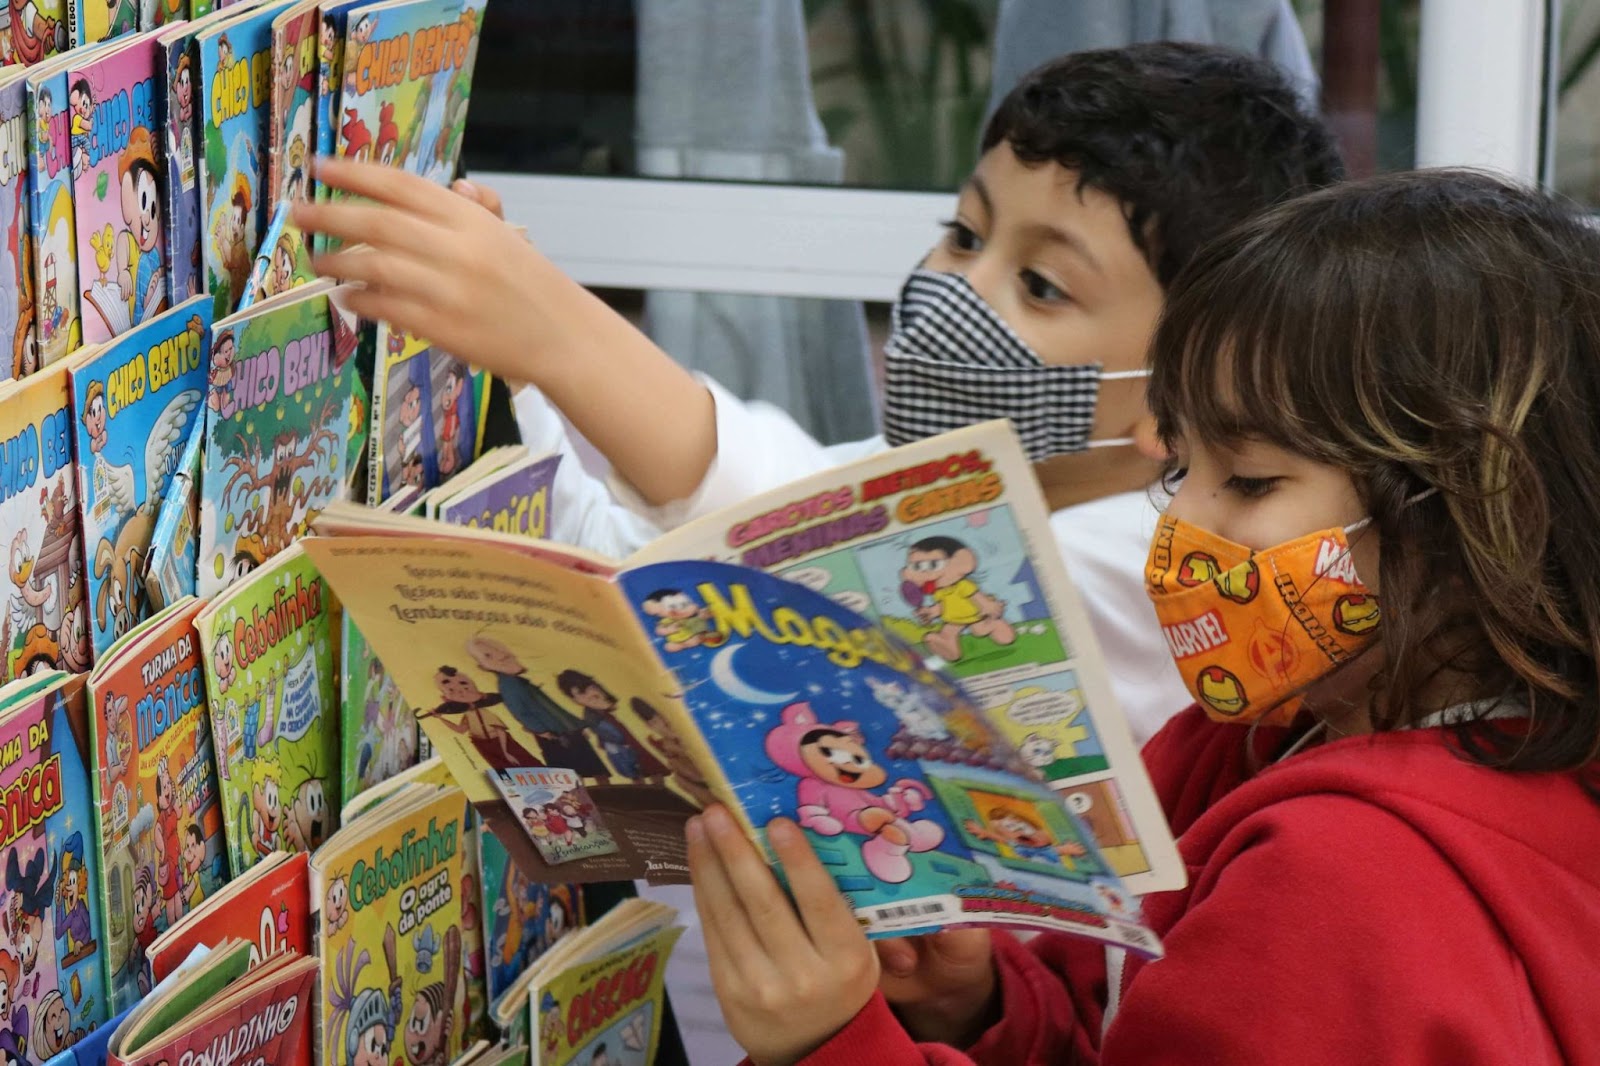 A imagem mostra 2 crianças em frente de uma prateleira de revistas em quadrinhos.